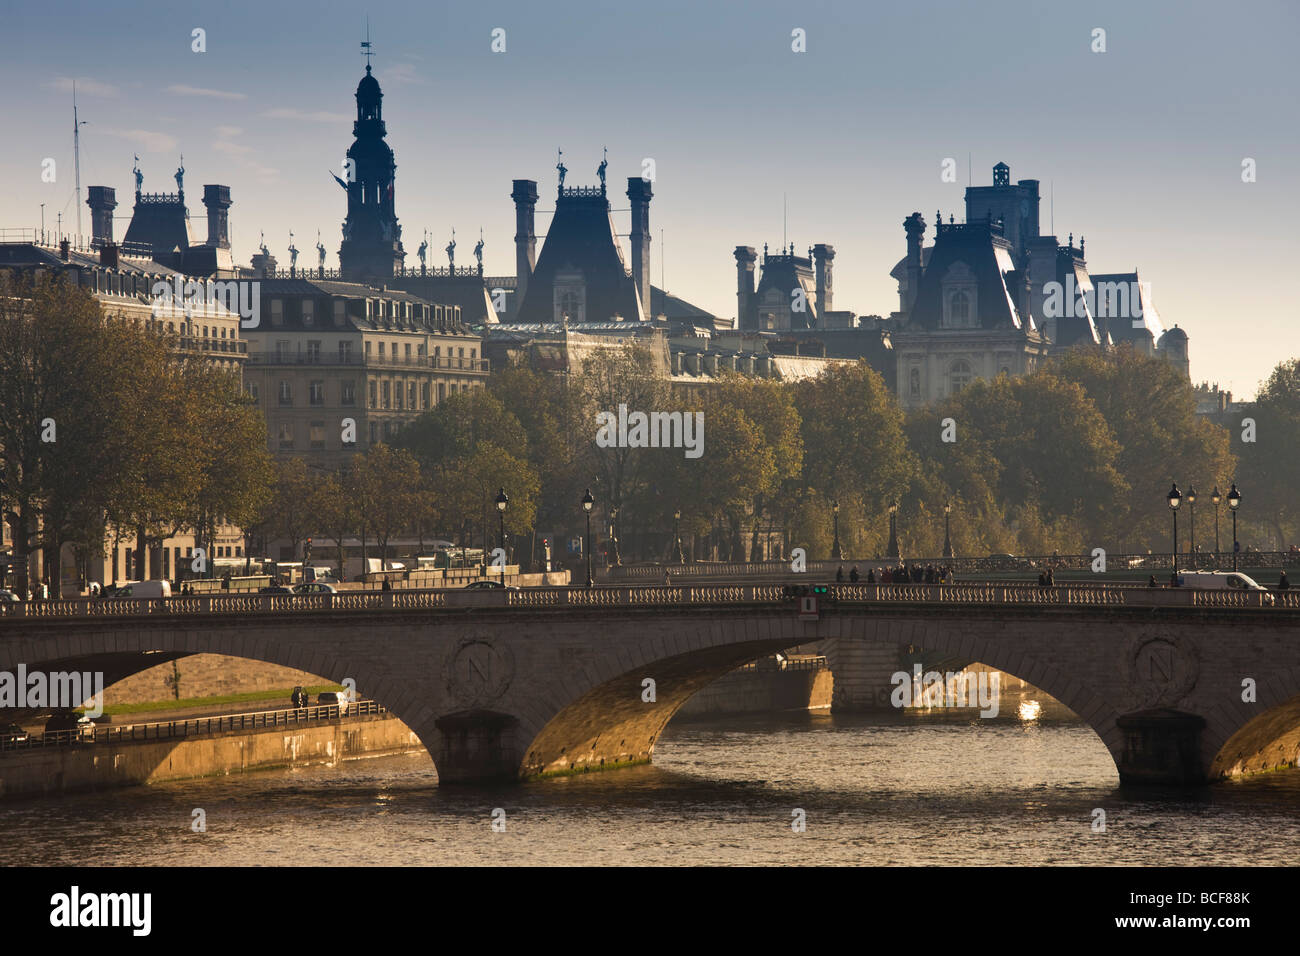 France, Paris, Pont St-Michel bridge Stock Photo